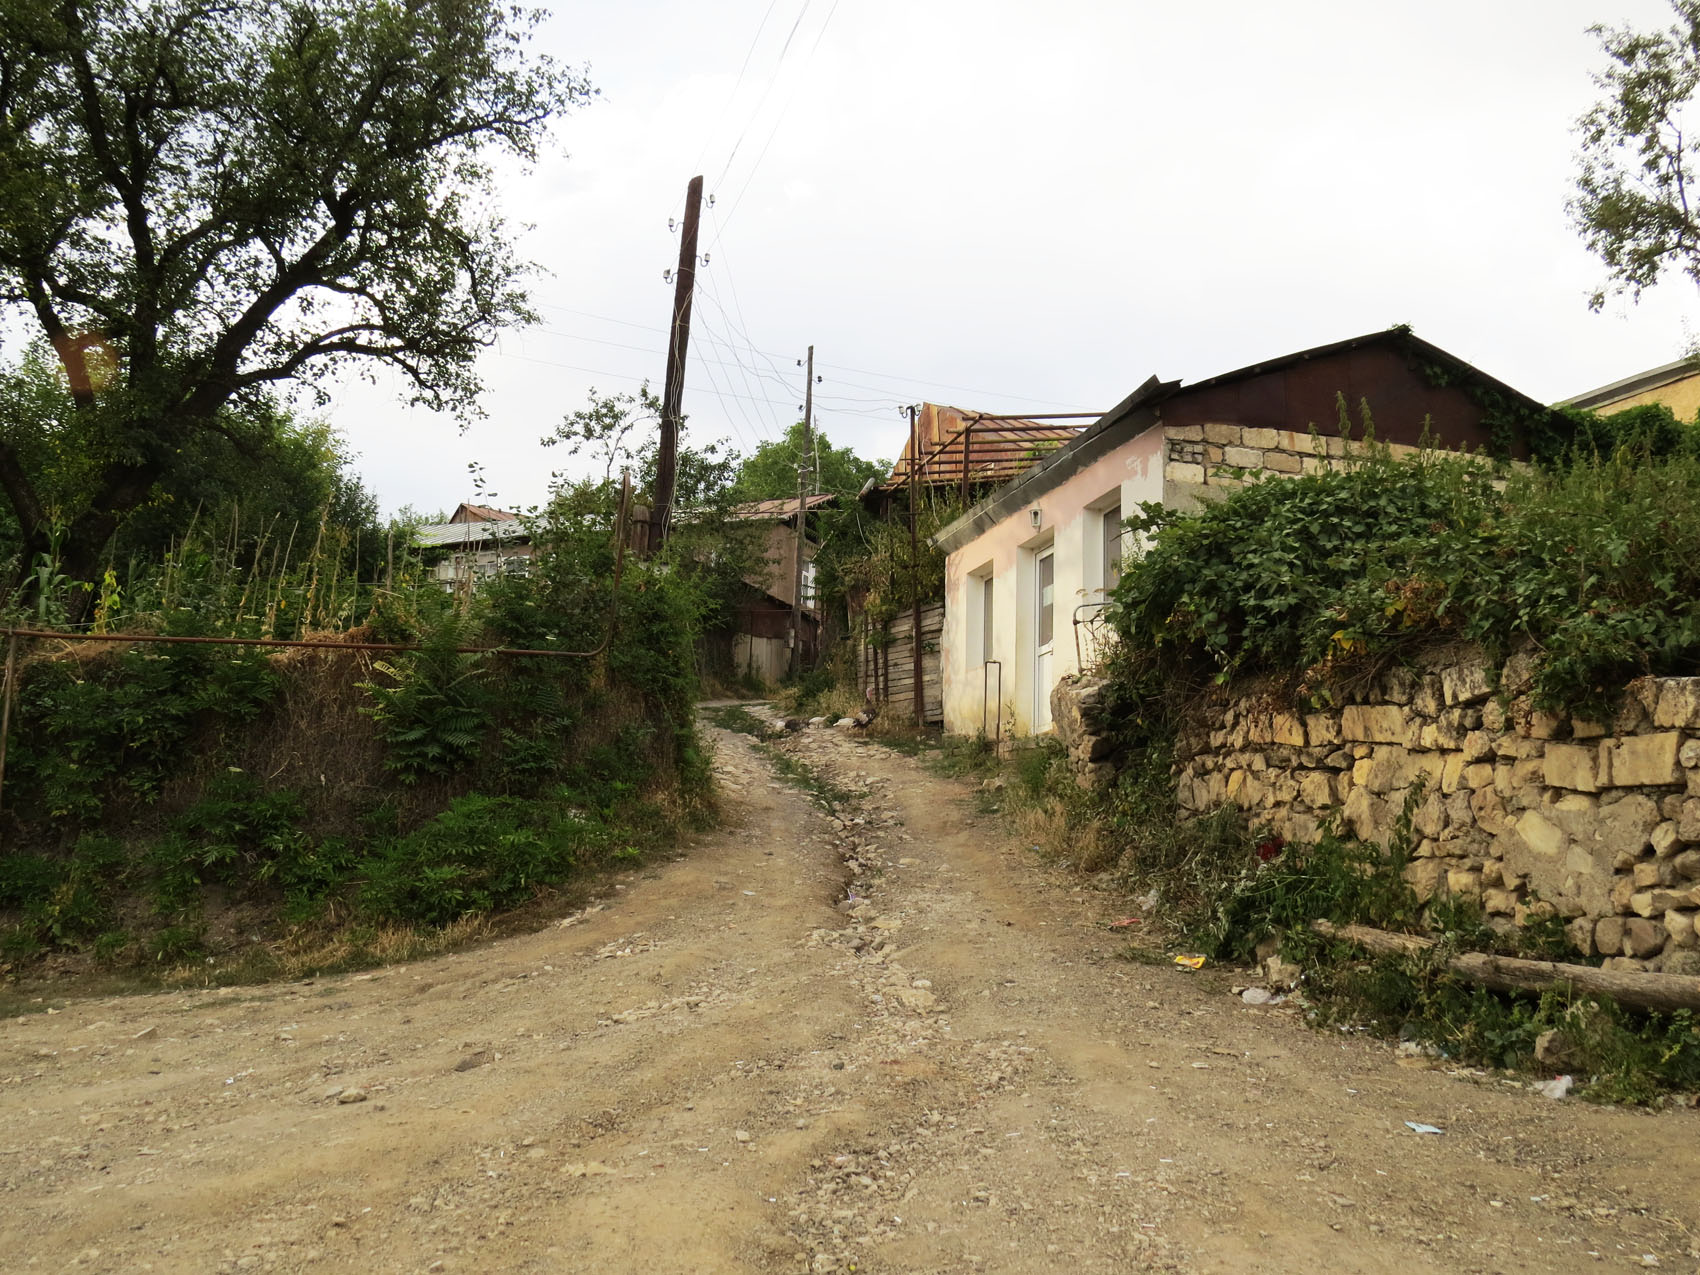 Улица ведёт в верхнюю часть села.